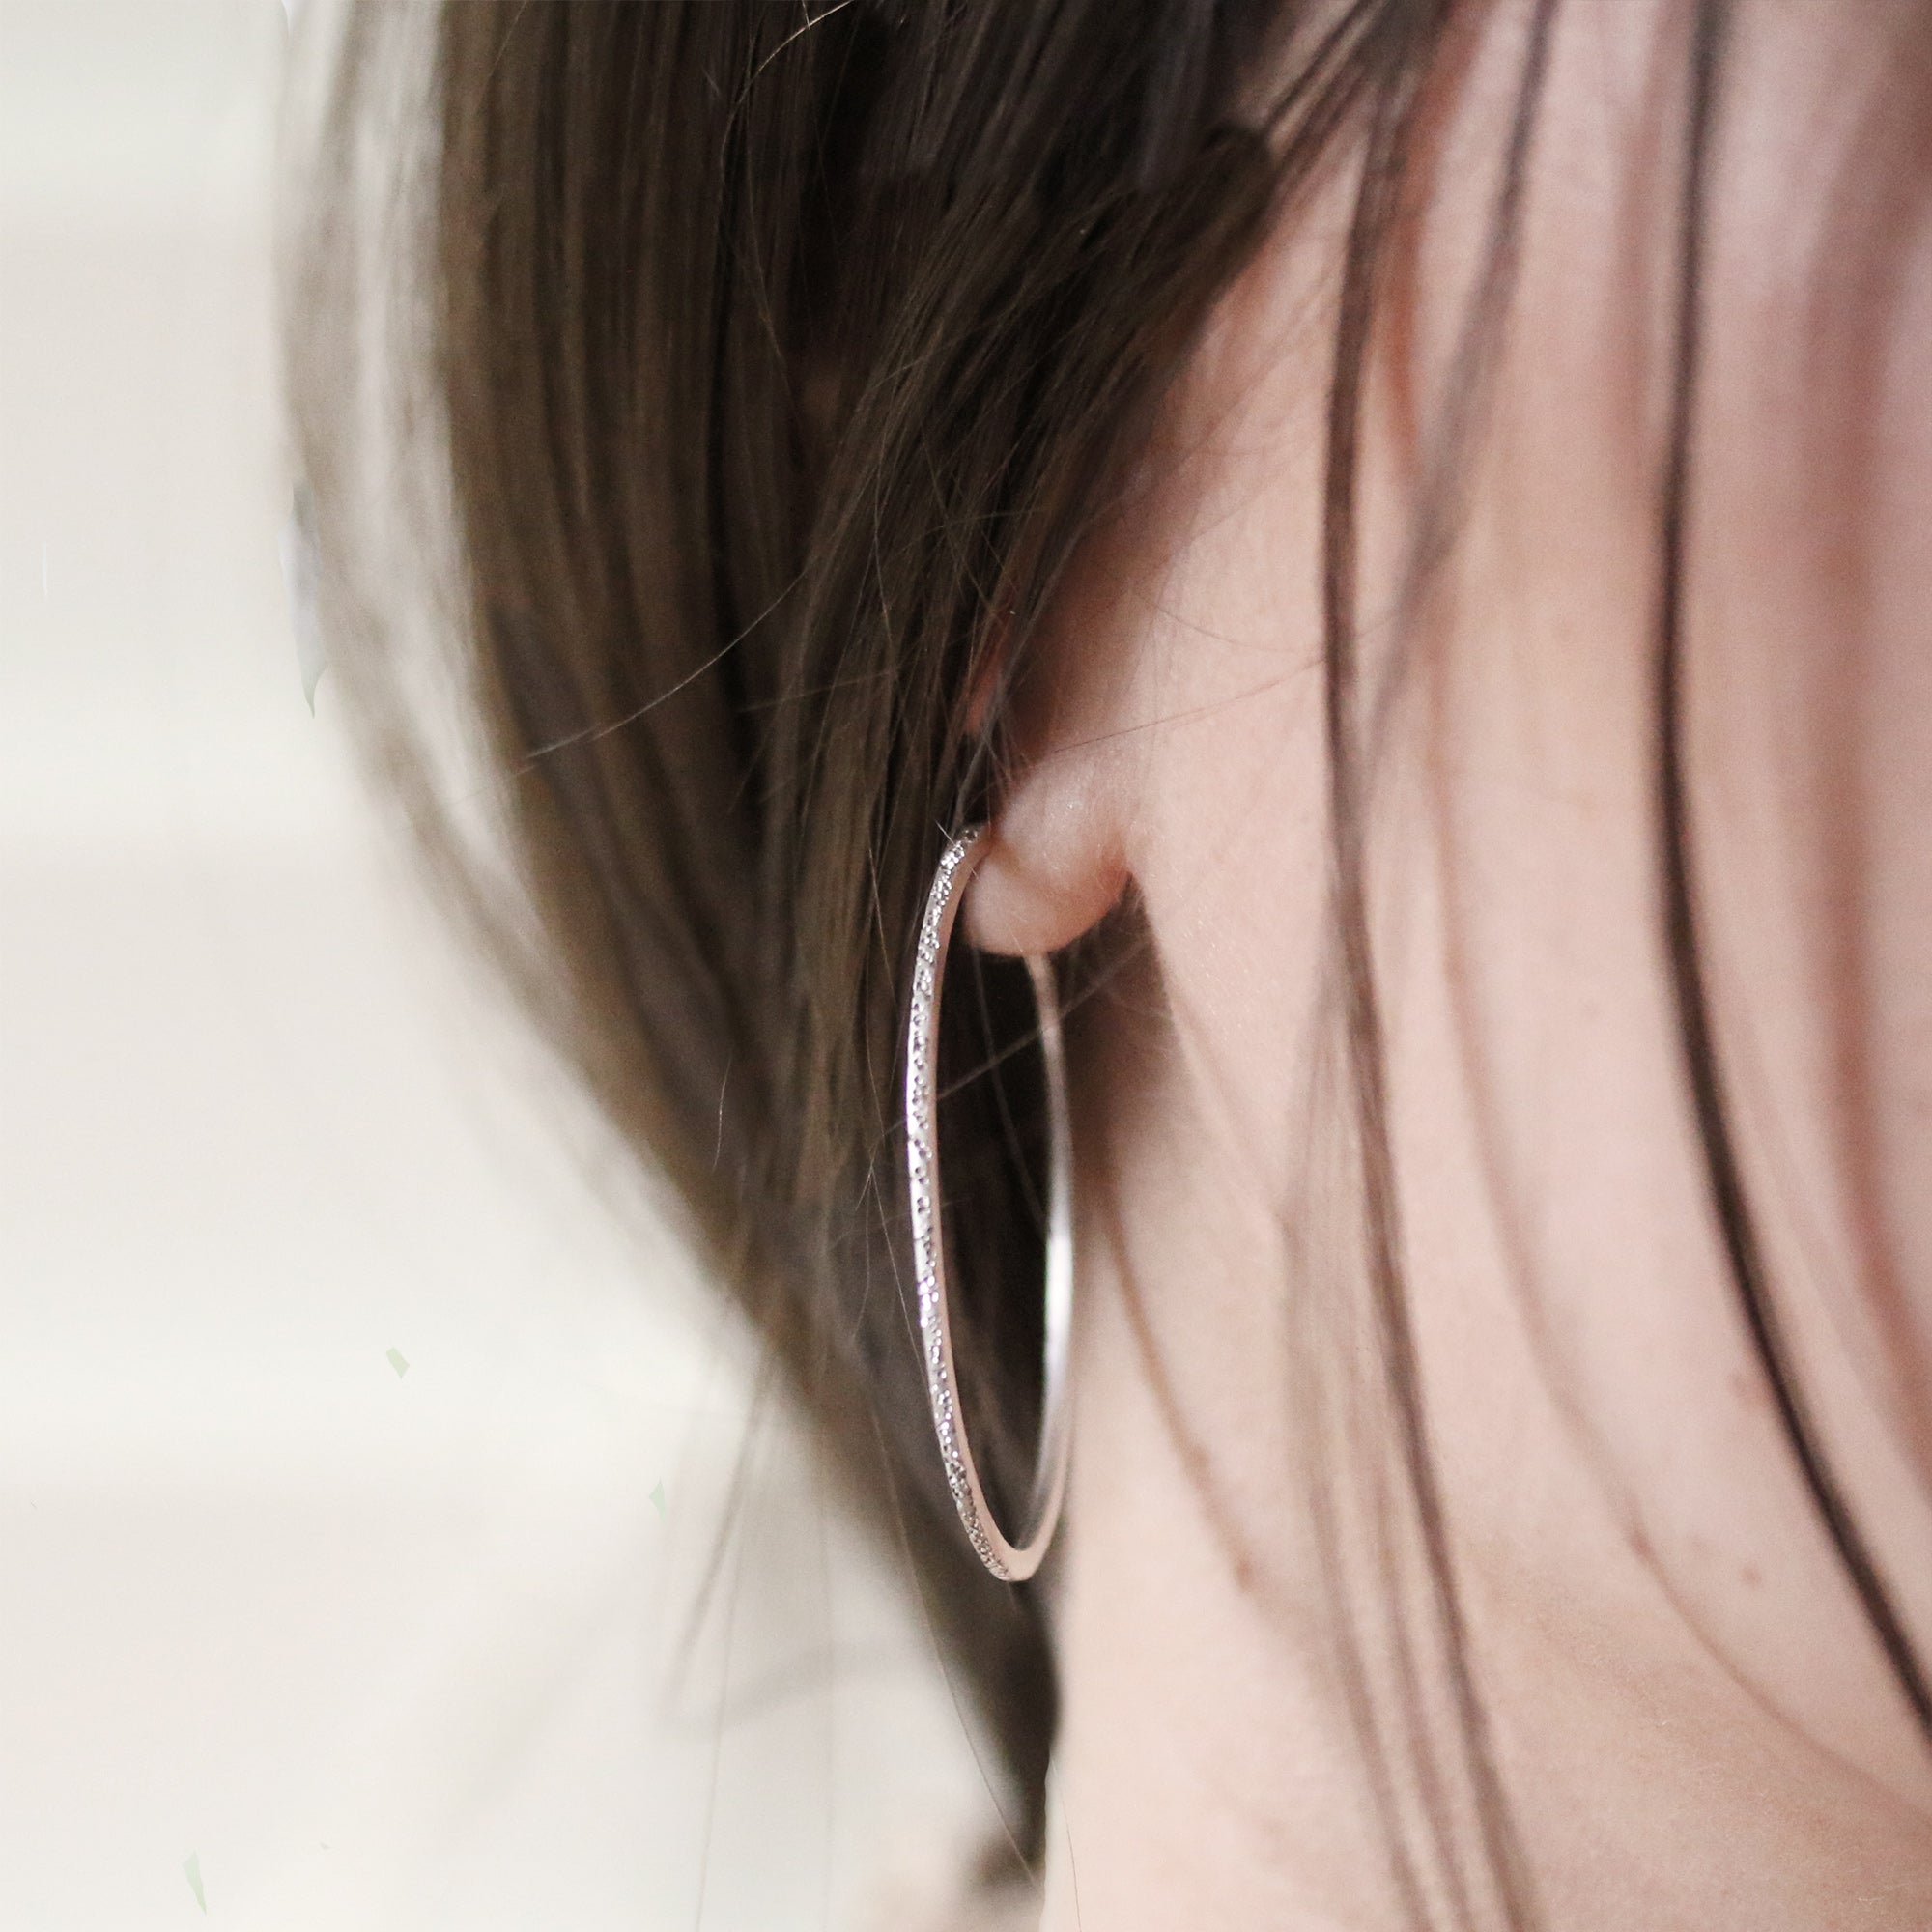 Small Silver Hoop Earrings - Silver - Woman - Earrings 